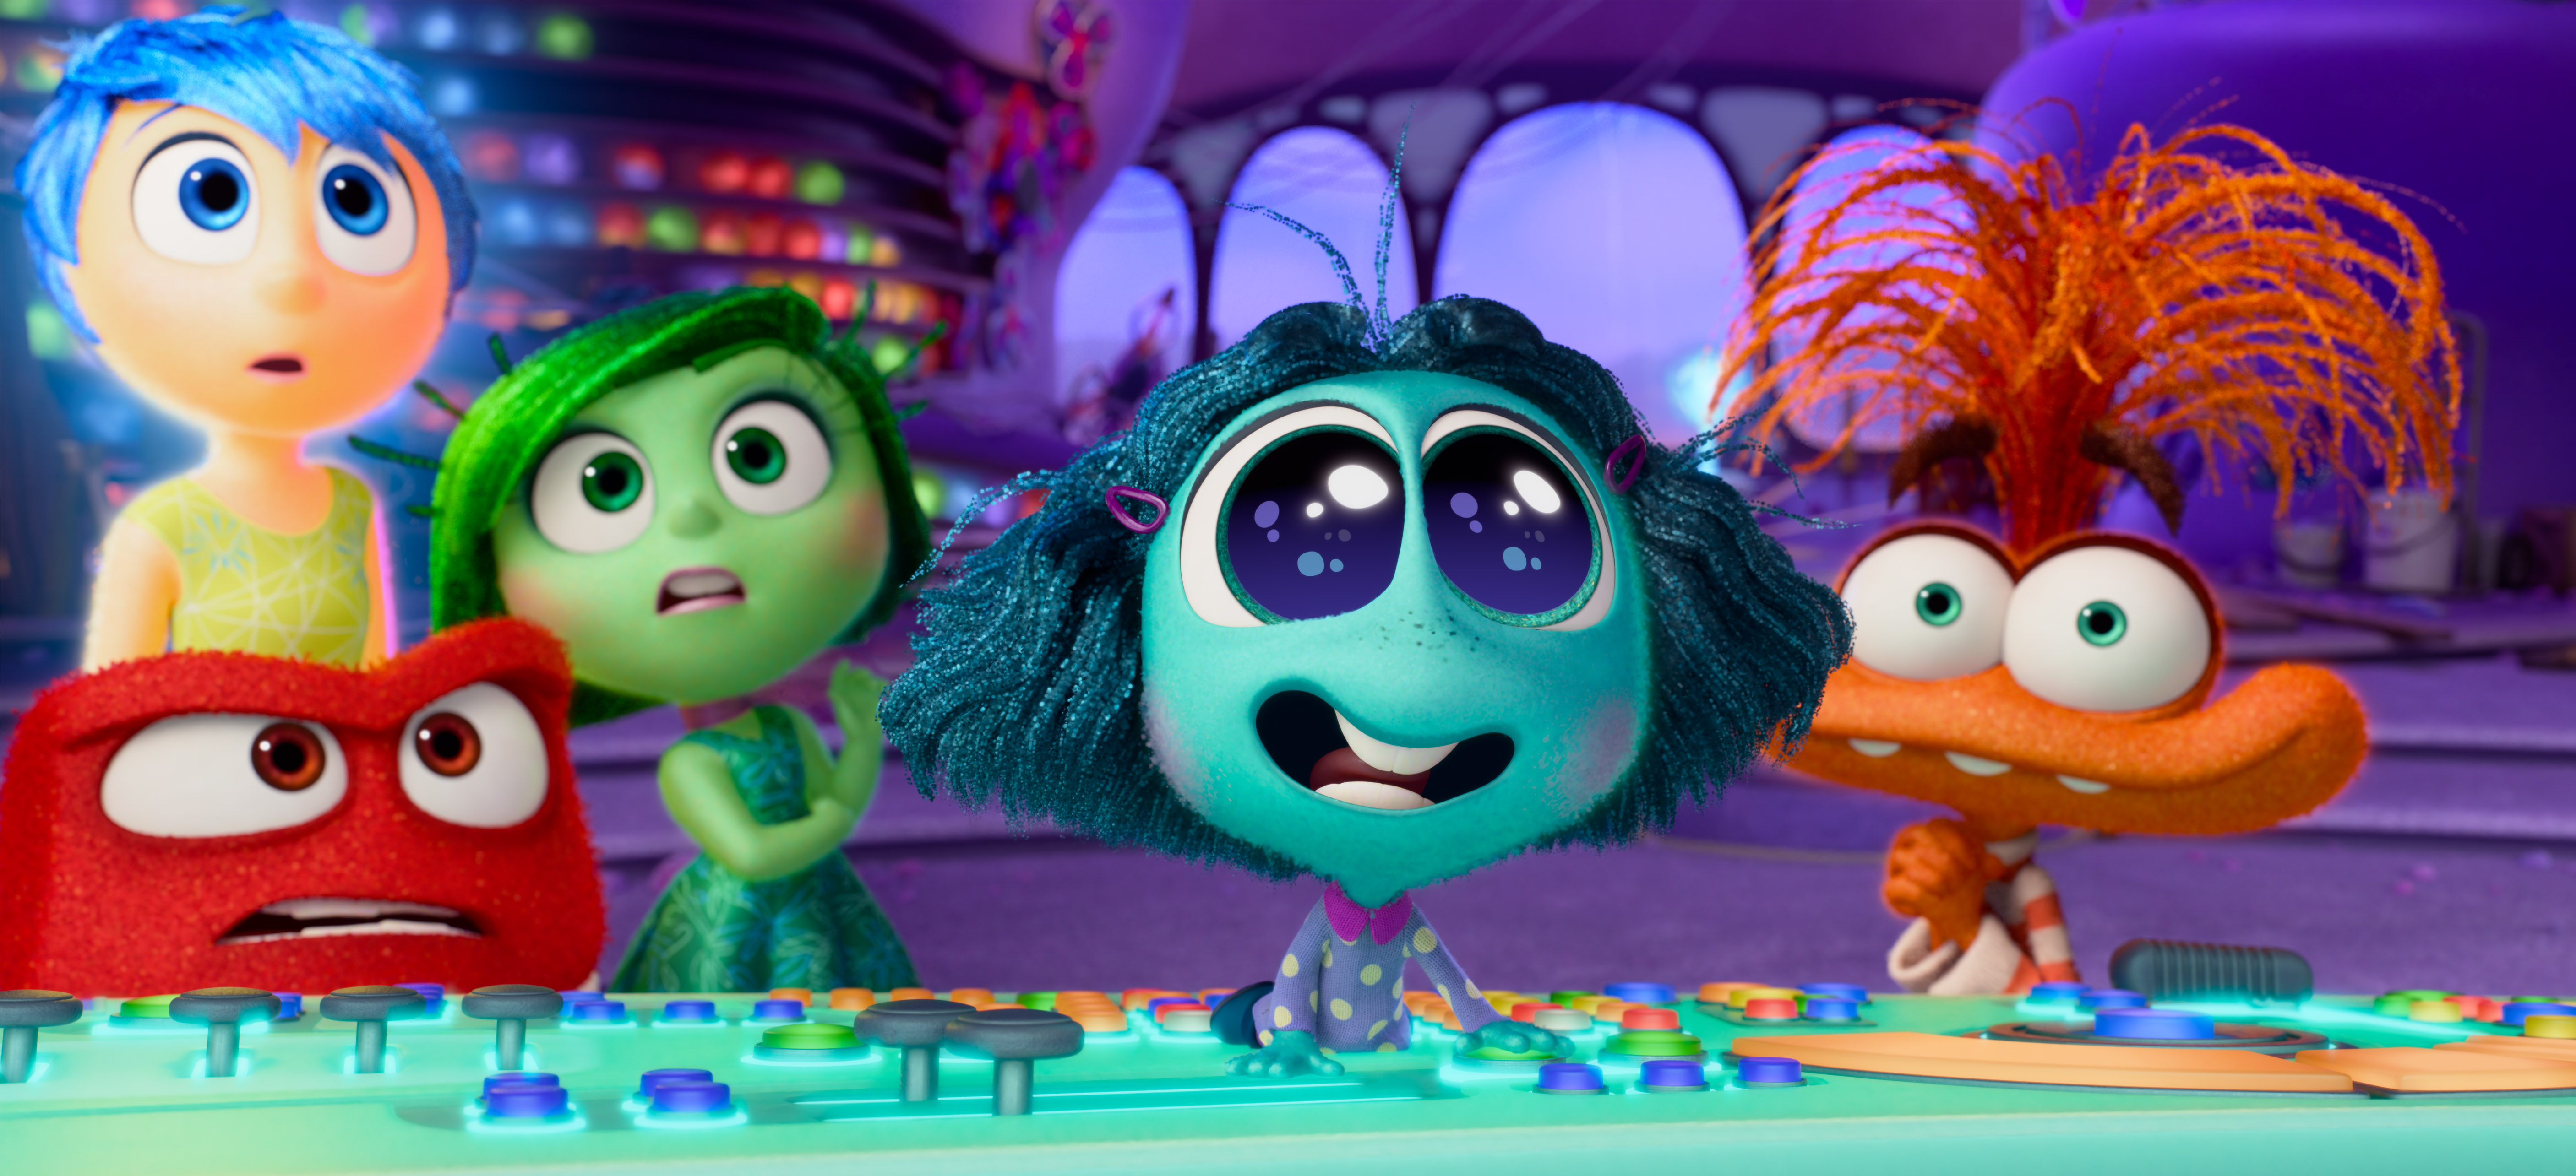 
                                 Intensa-Mente 2 se convierte en la película más taquillera en Pixar 
                            